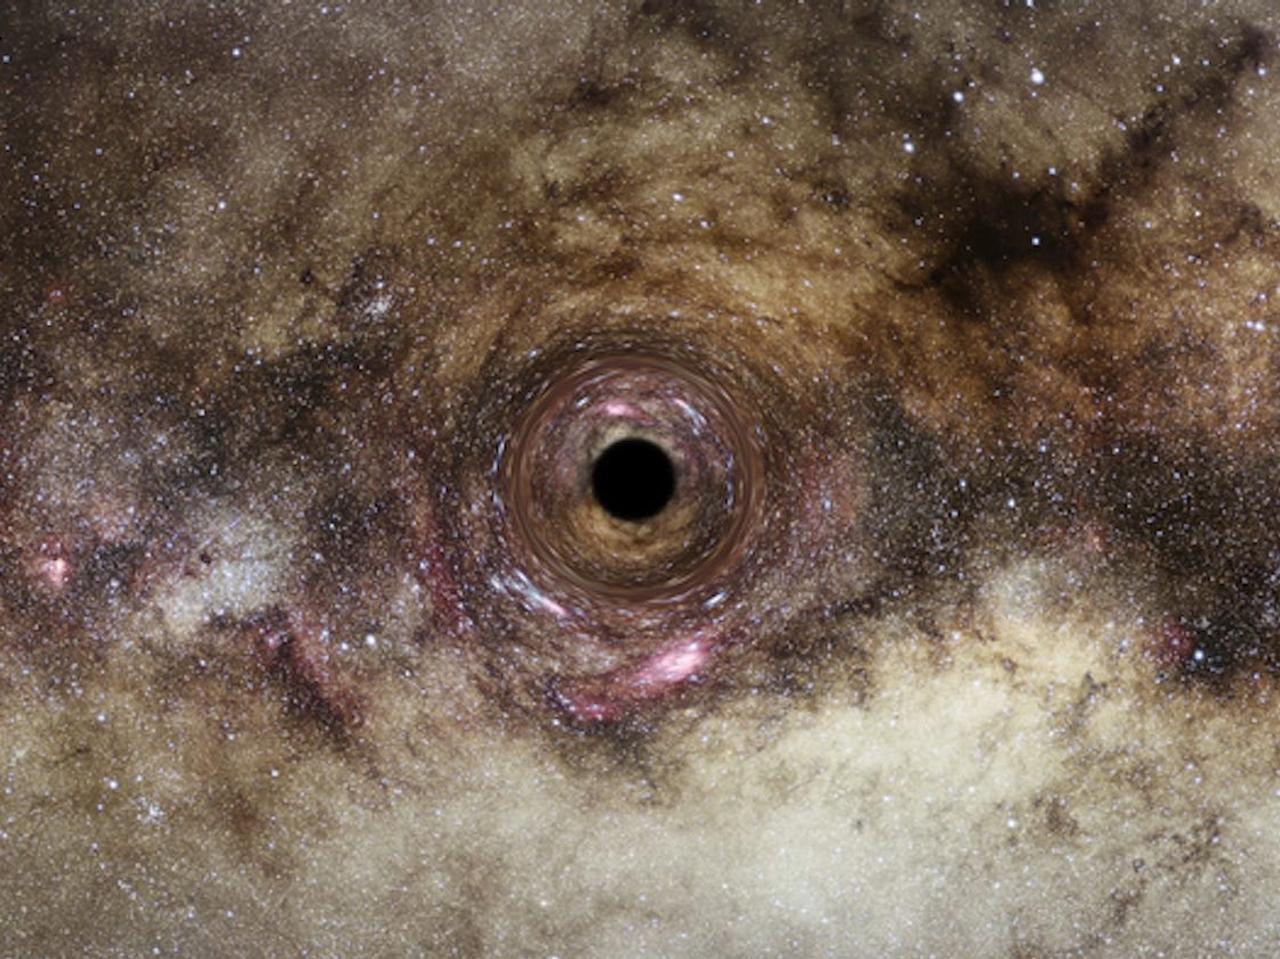 ブラックホールの想像図。観測史上最大級のブラックホールが発見された。この超大質量ブラックホールは、背後にある銀河からの光を歪めてしまうほど強力な重力がある。